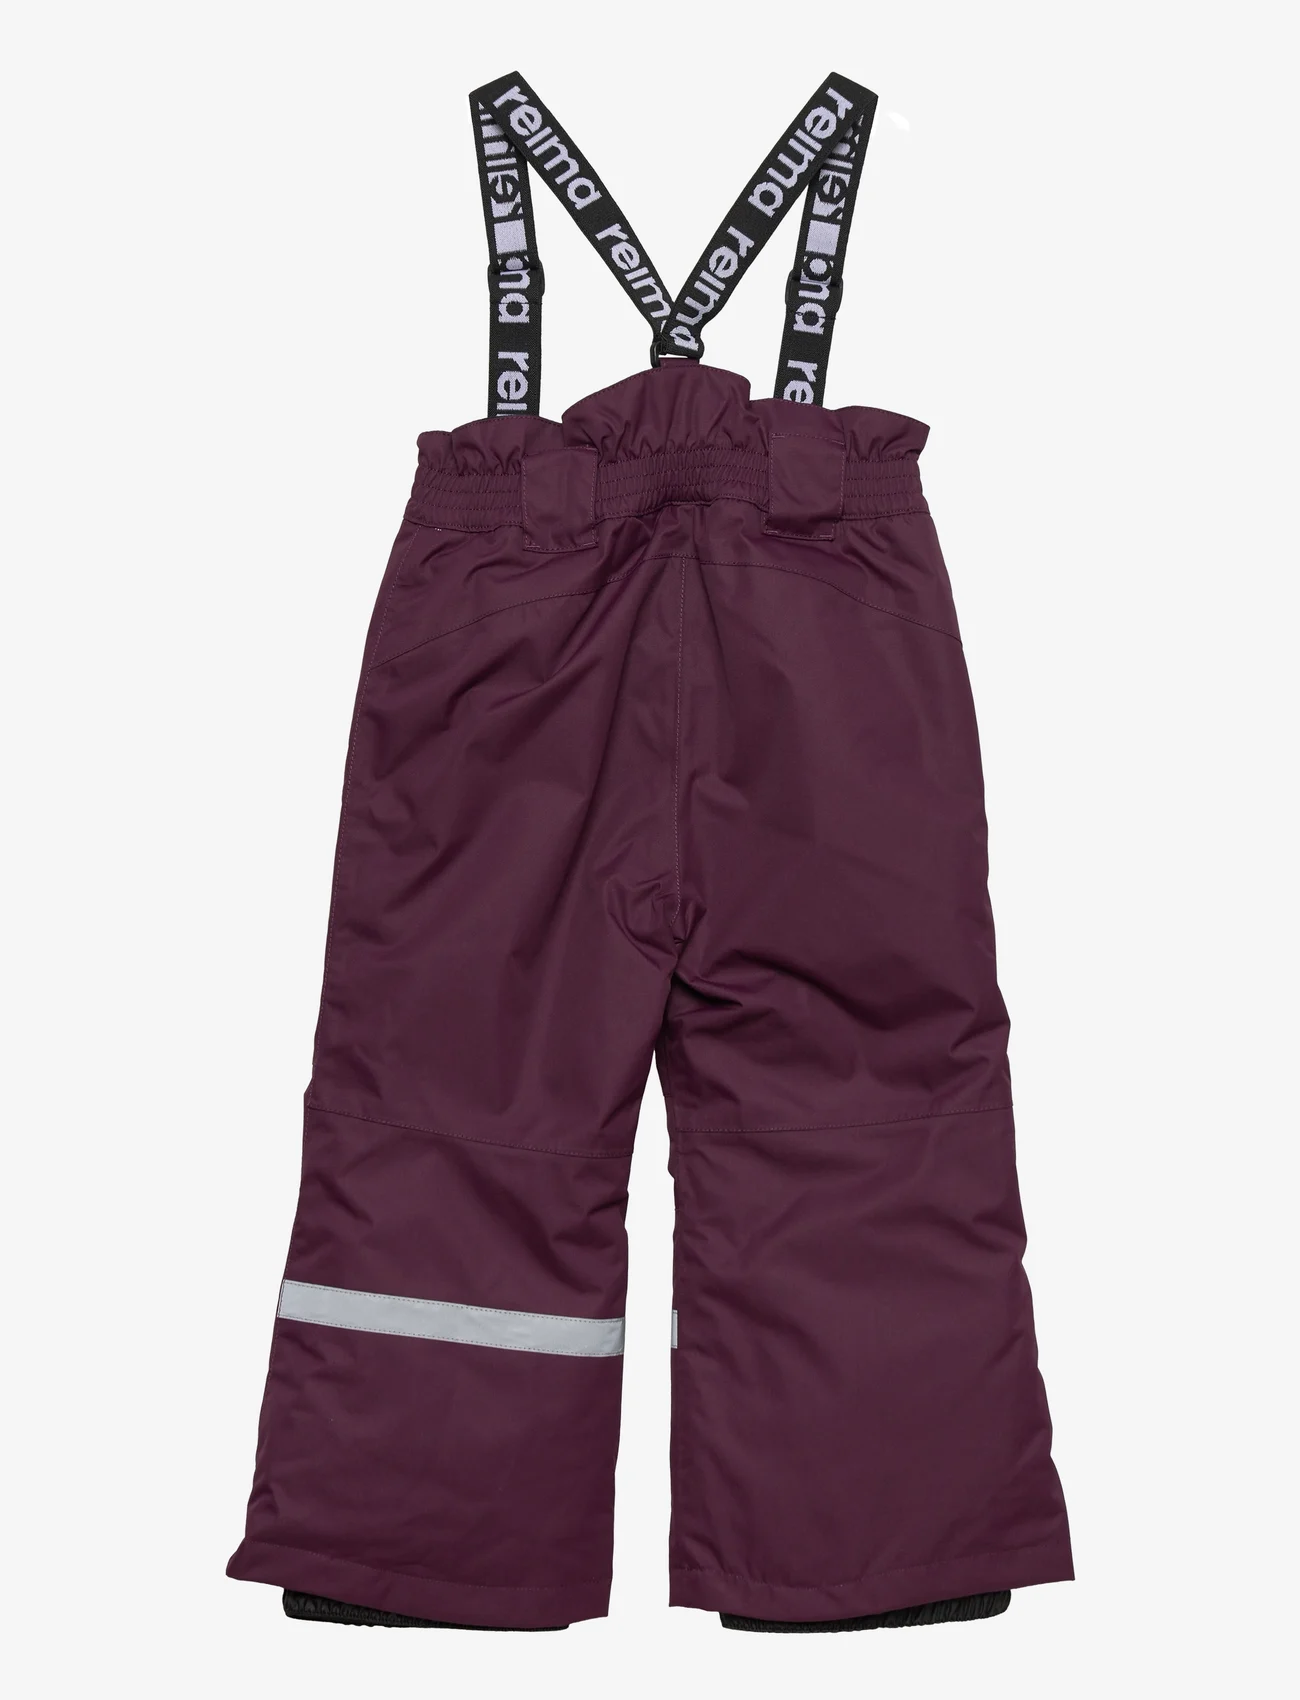 Reima - Kids' sku winter trousers Tuokio - Žieminės kelnės - deep purple - 1